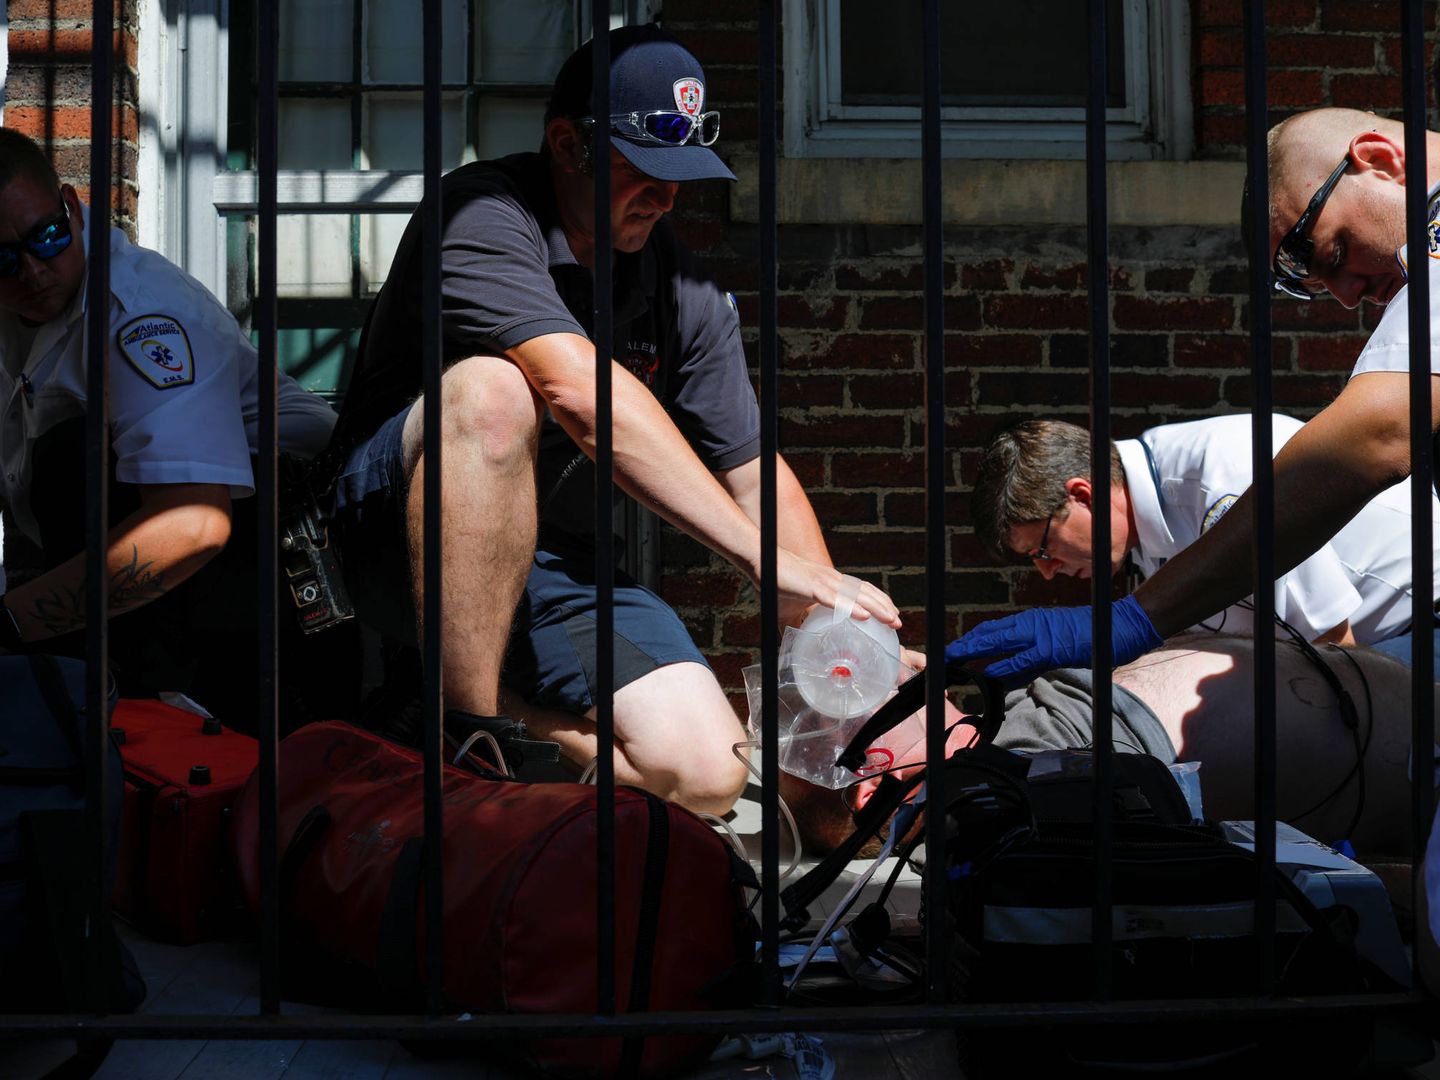 Intervención del equipo médico ante una sobredosis en Boston. (Reuters)